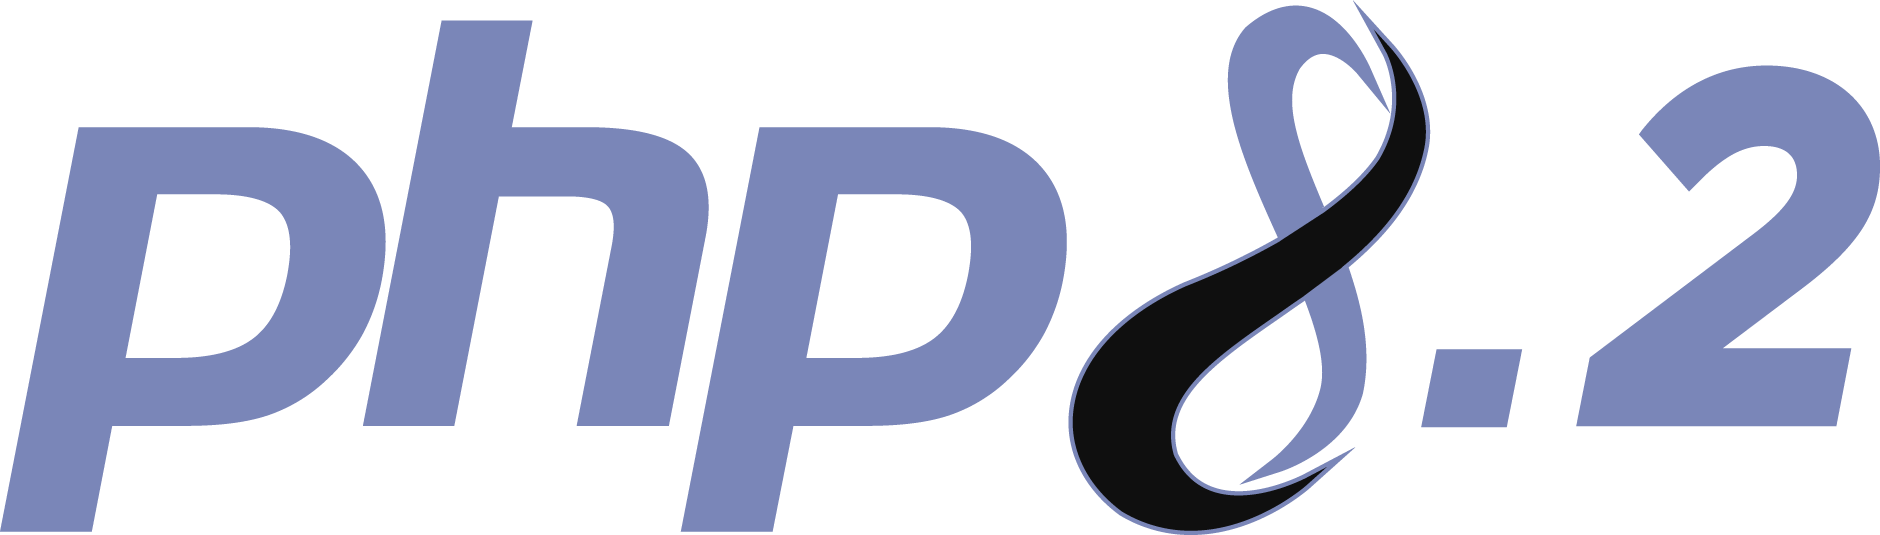 php82-logo